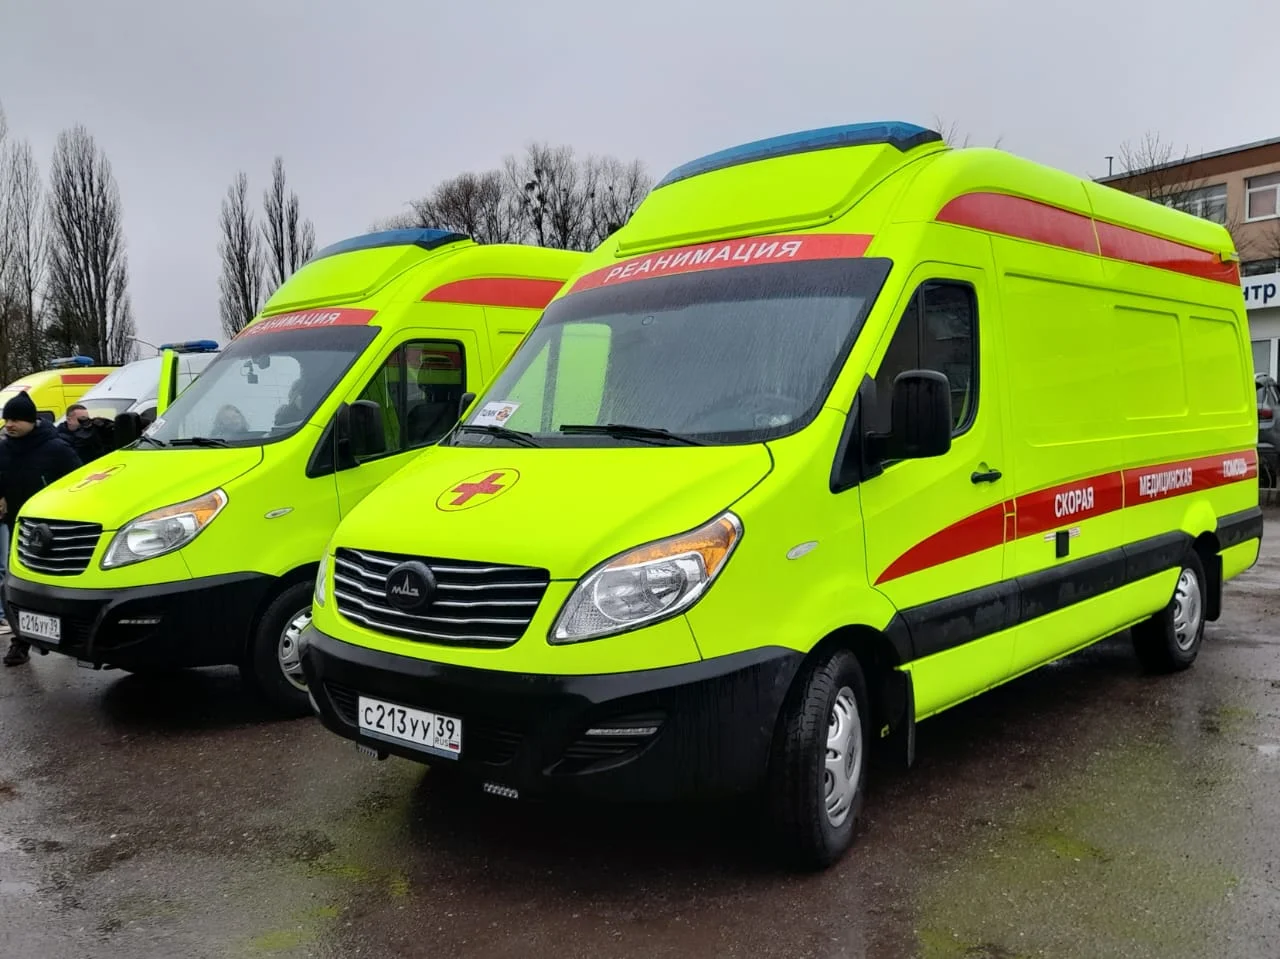 Служба скорой медицинской помощи региона получила два новых реанимобиля